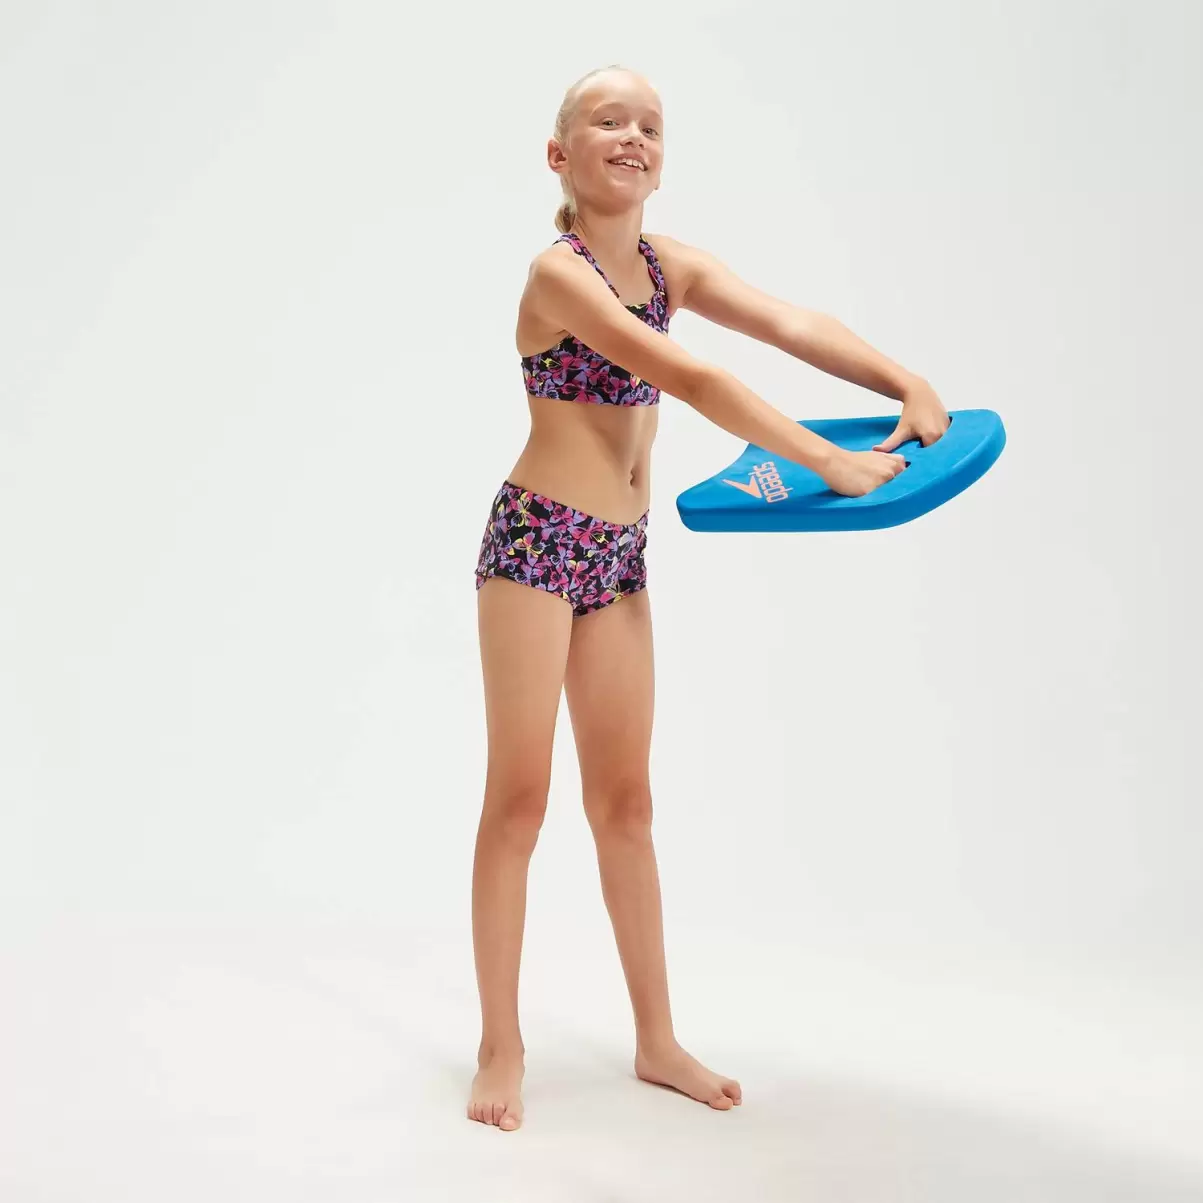 Speedo Kinder Bedruckter Bikini Mit Längerem Bein Für Mädchen Schwarz/Pink Mädchen Bademode - 2